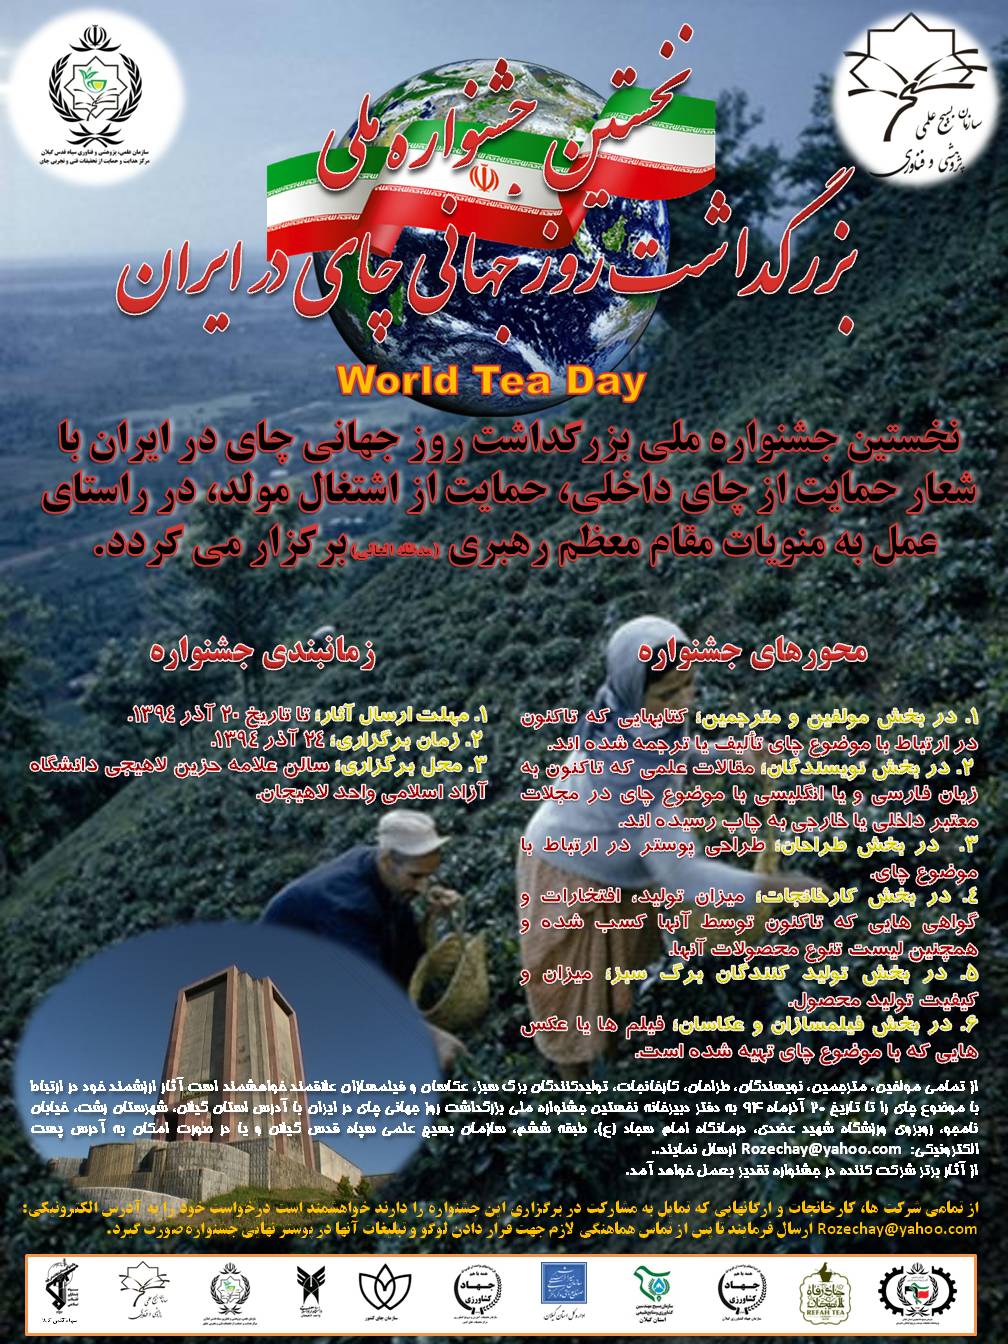 نخستین جشنواره ملی بزرگداشت روز جهانی چای در ایران